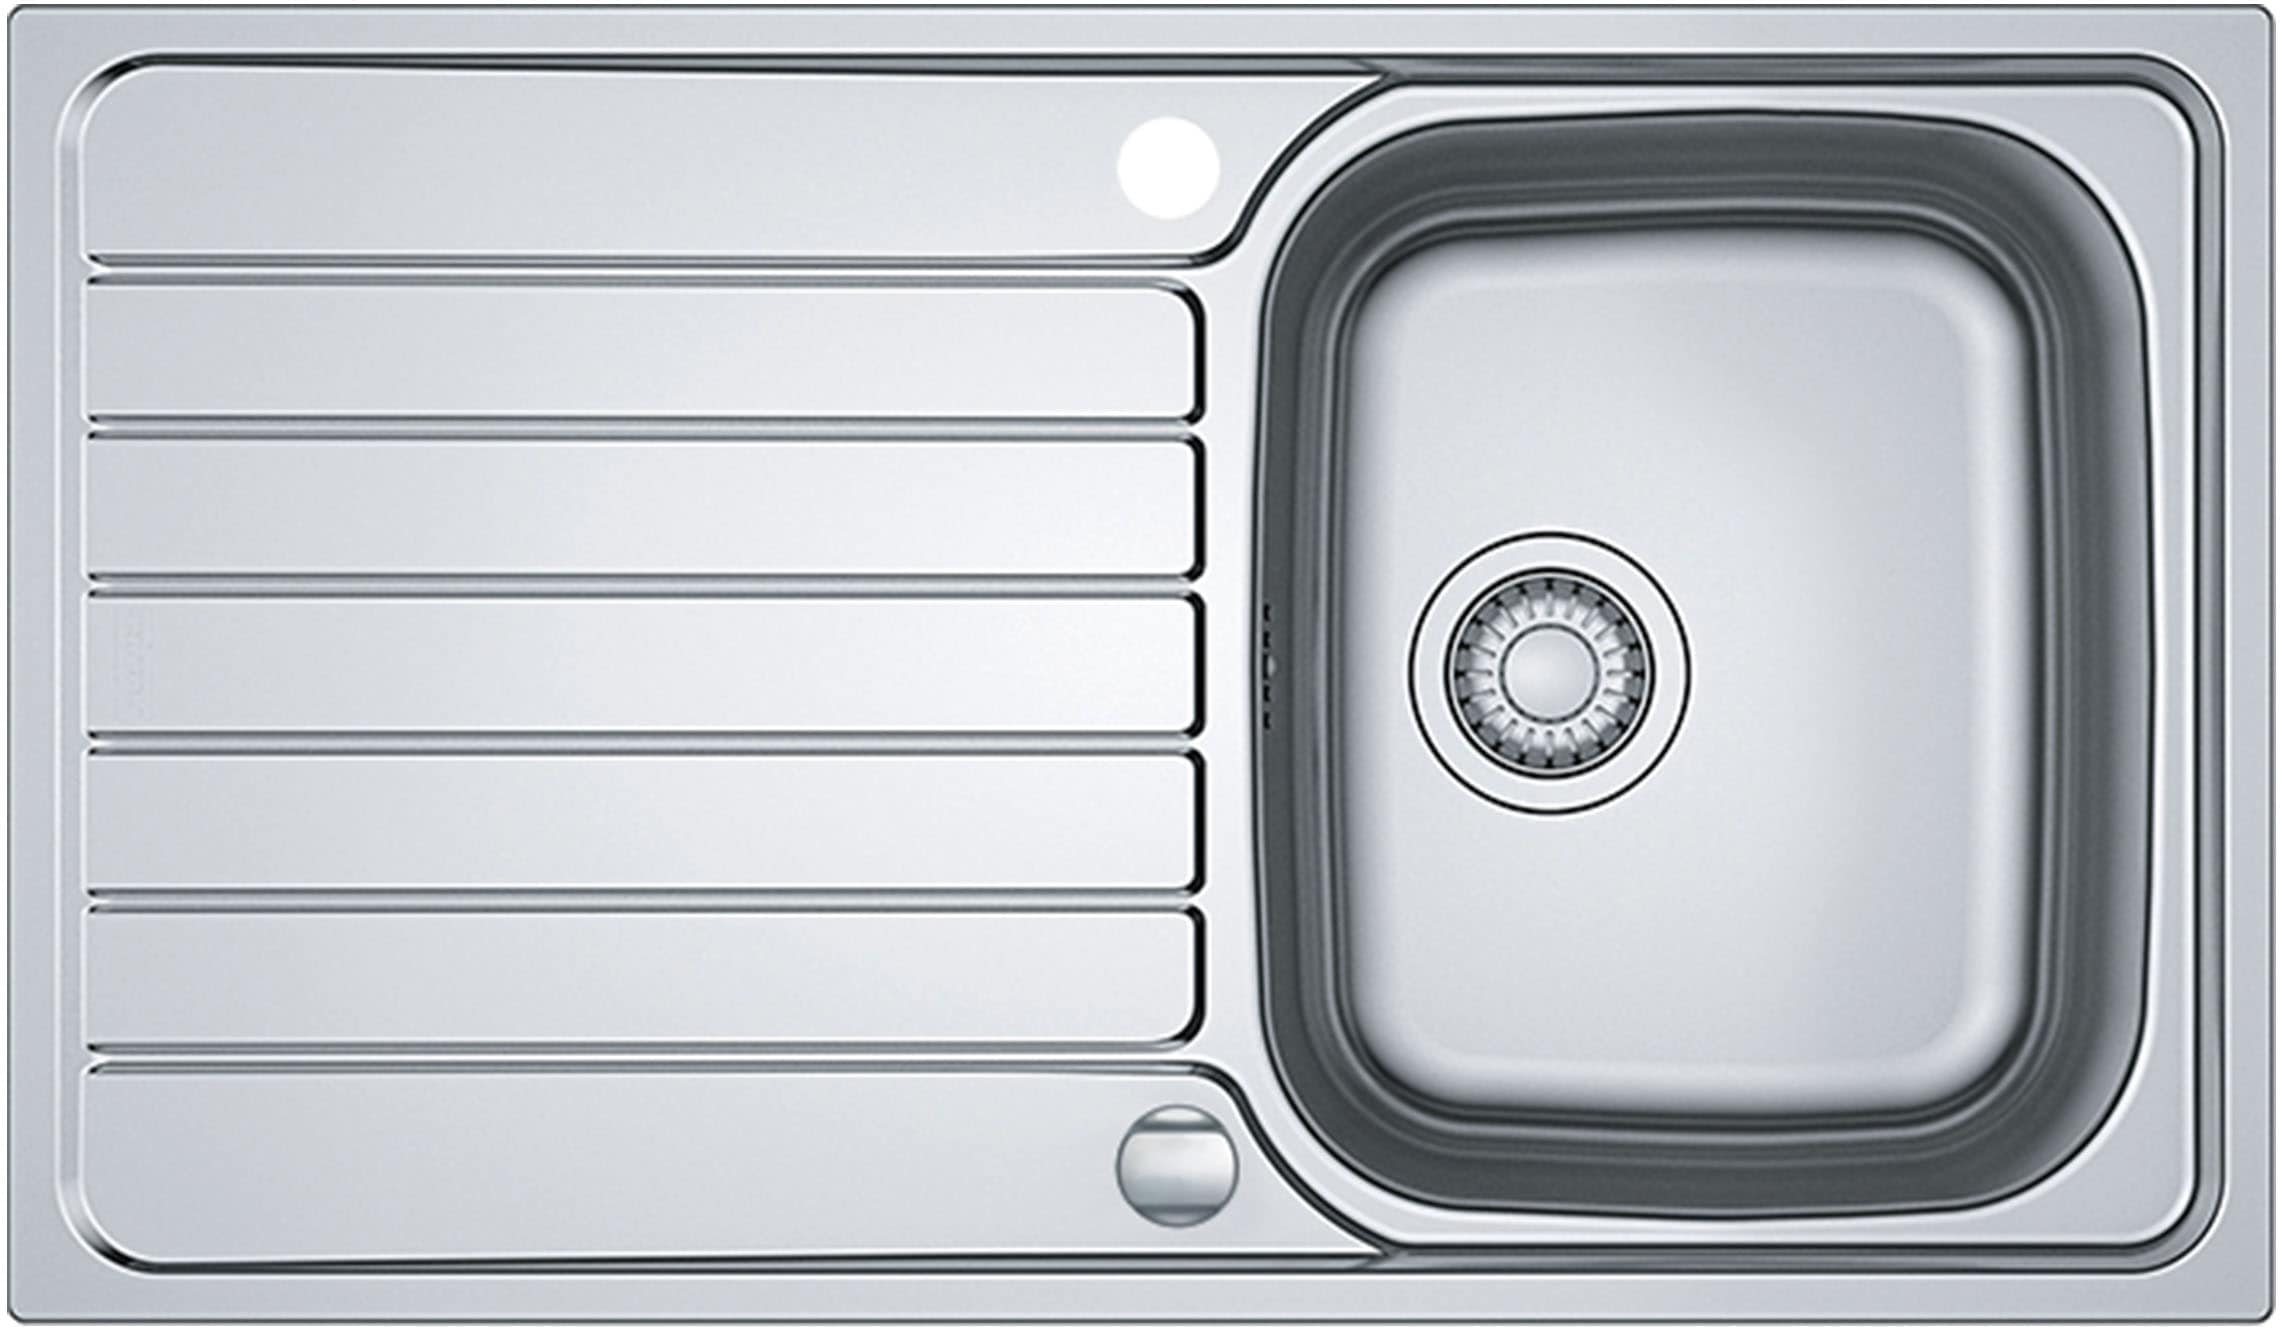 nobilia® Küchenzeile »"Easytouch basic"«, vormontiert, Ausrichtung wählbar, Breite 210 cm, mit E-Geräten